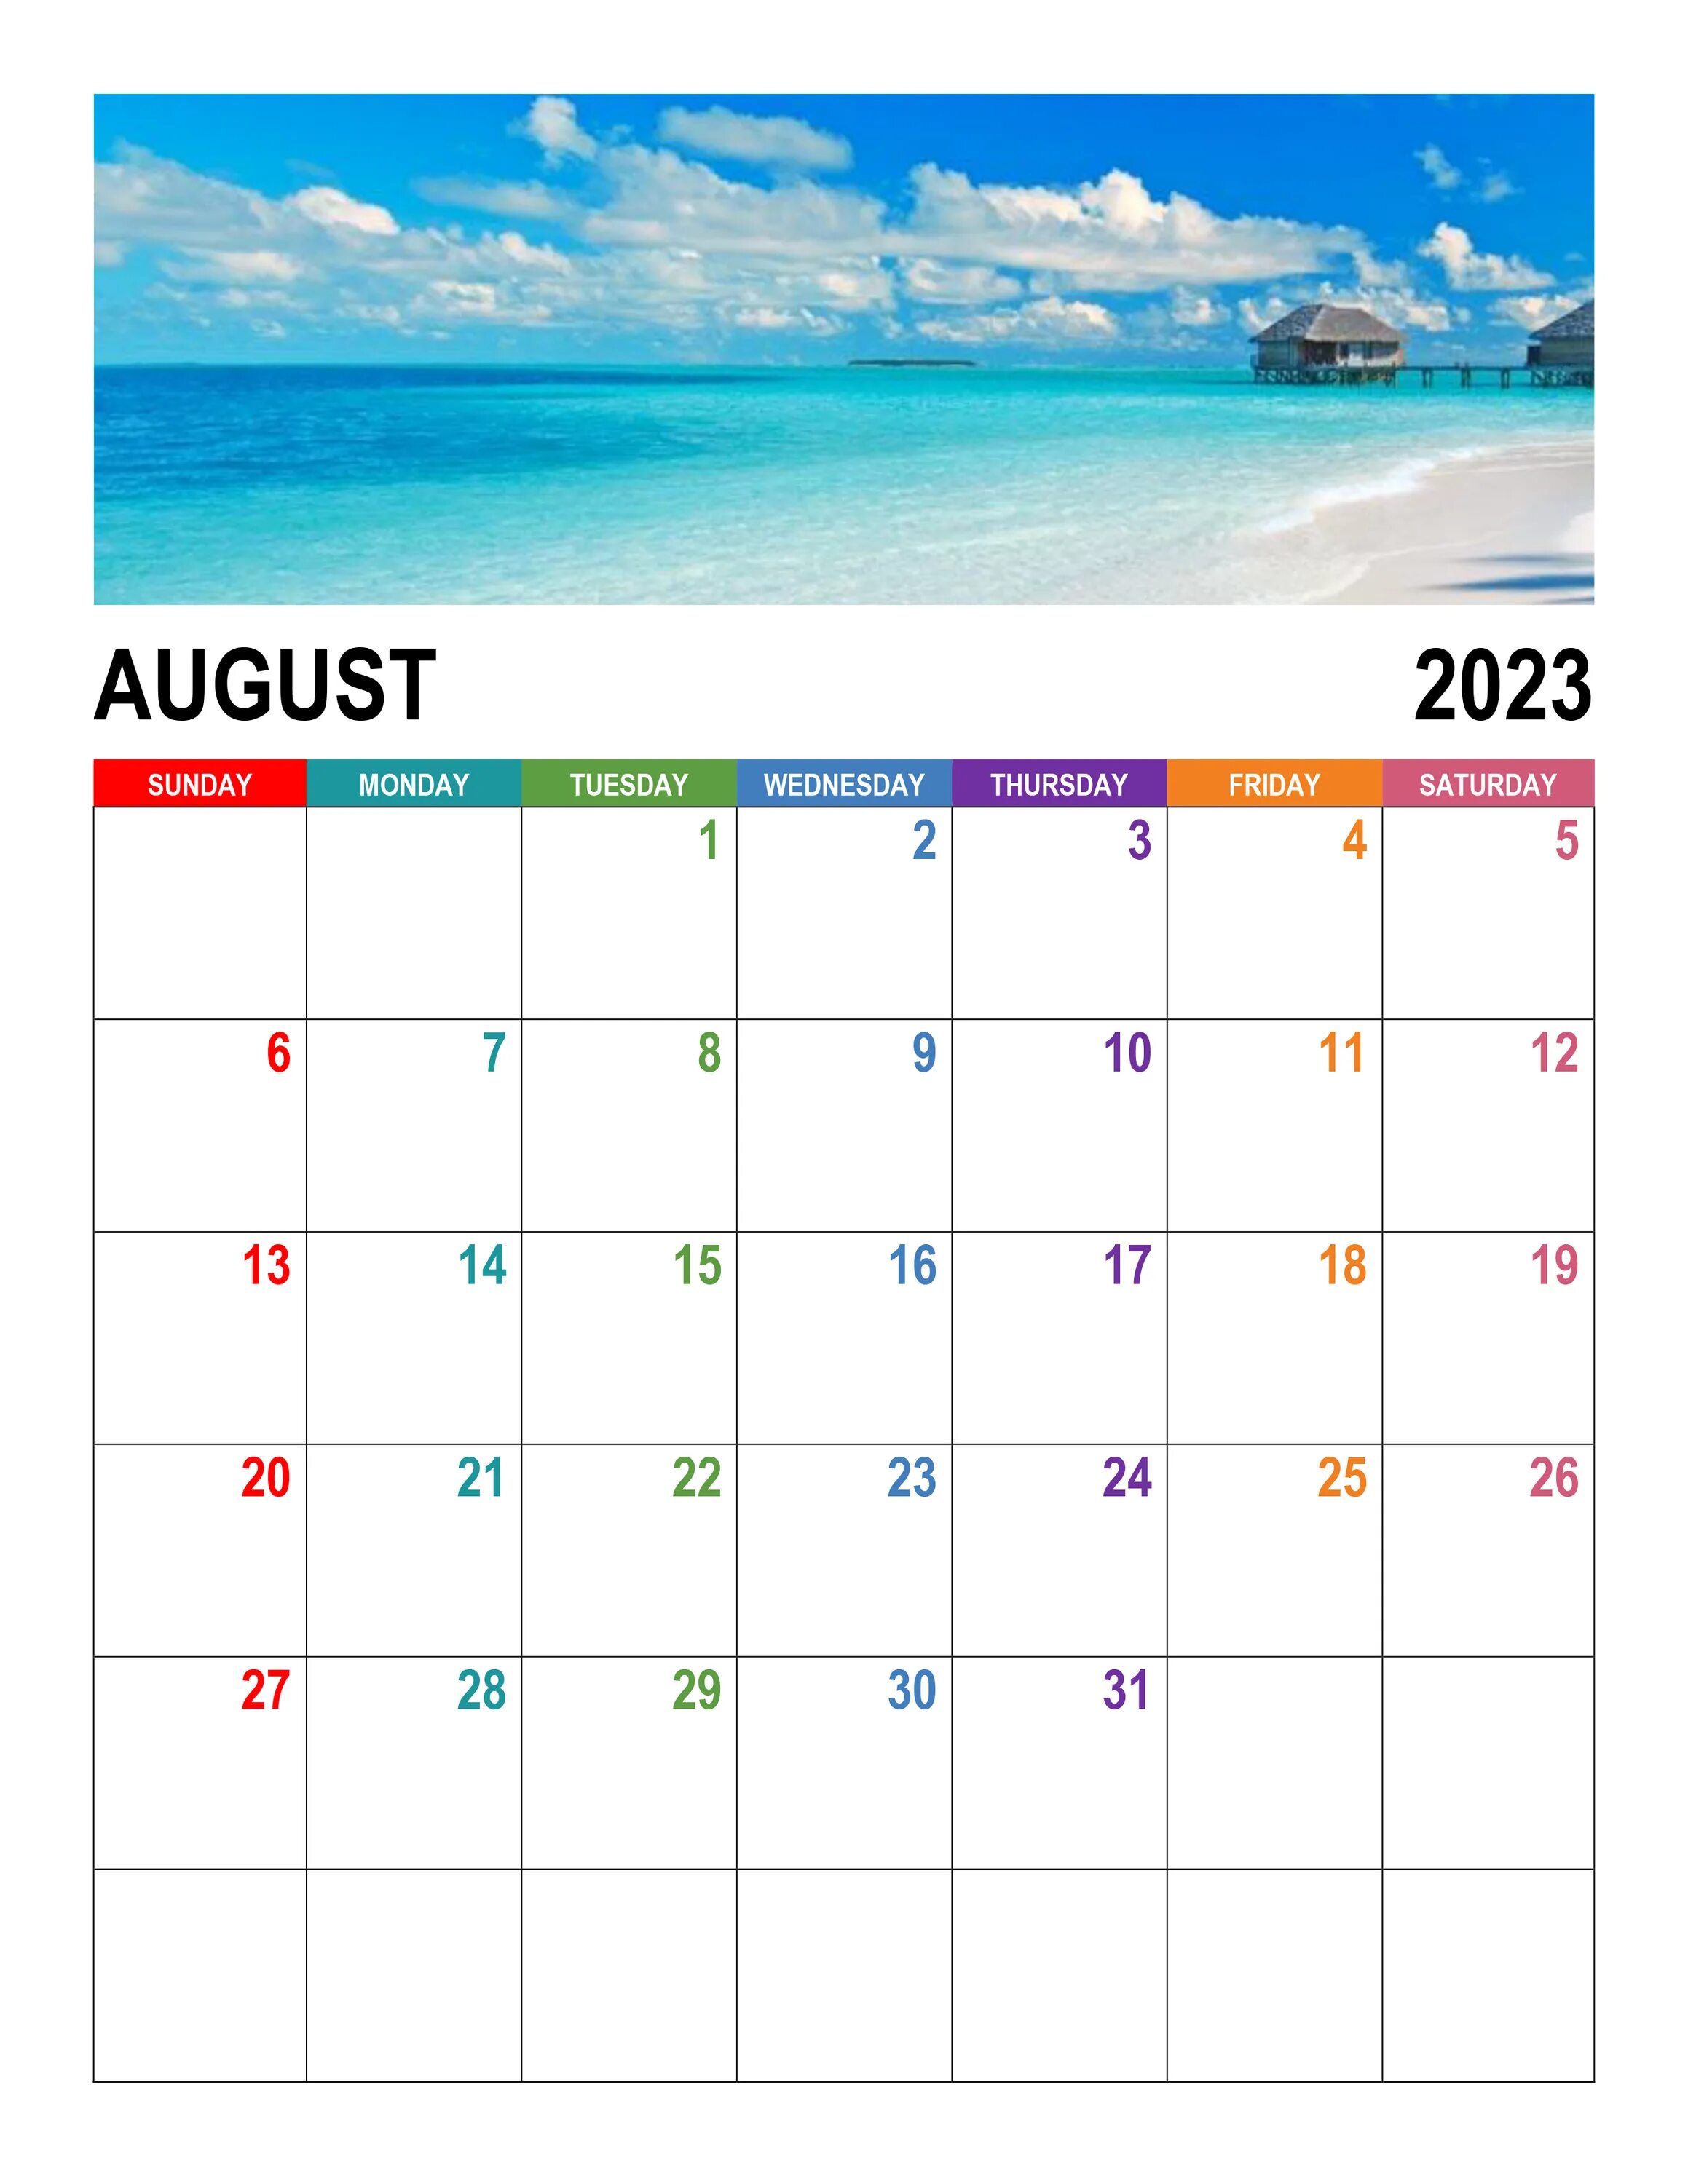 Календарь август 24. August 2023. Календарь август. Календарь август 2023. Календарь на август 2023 года.